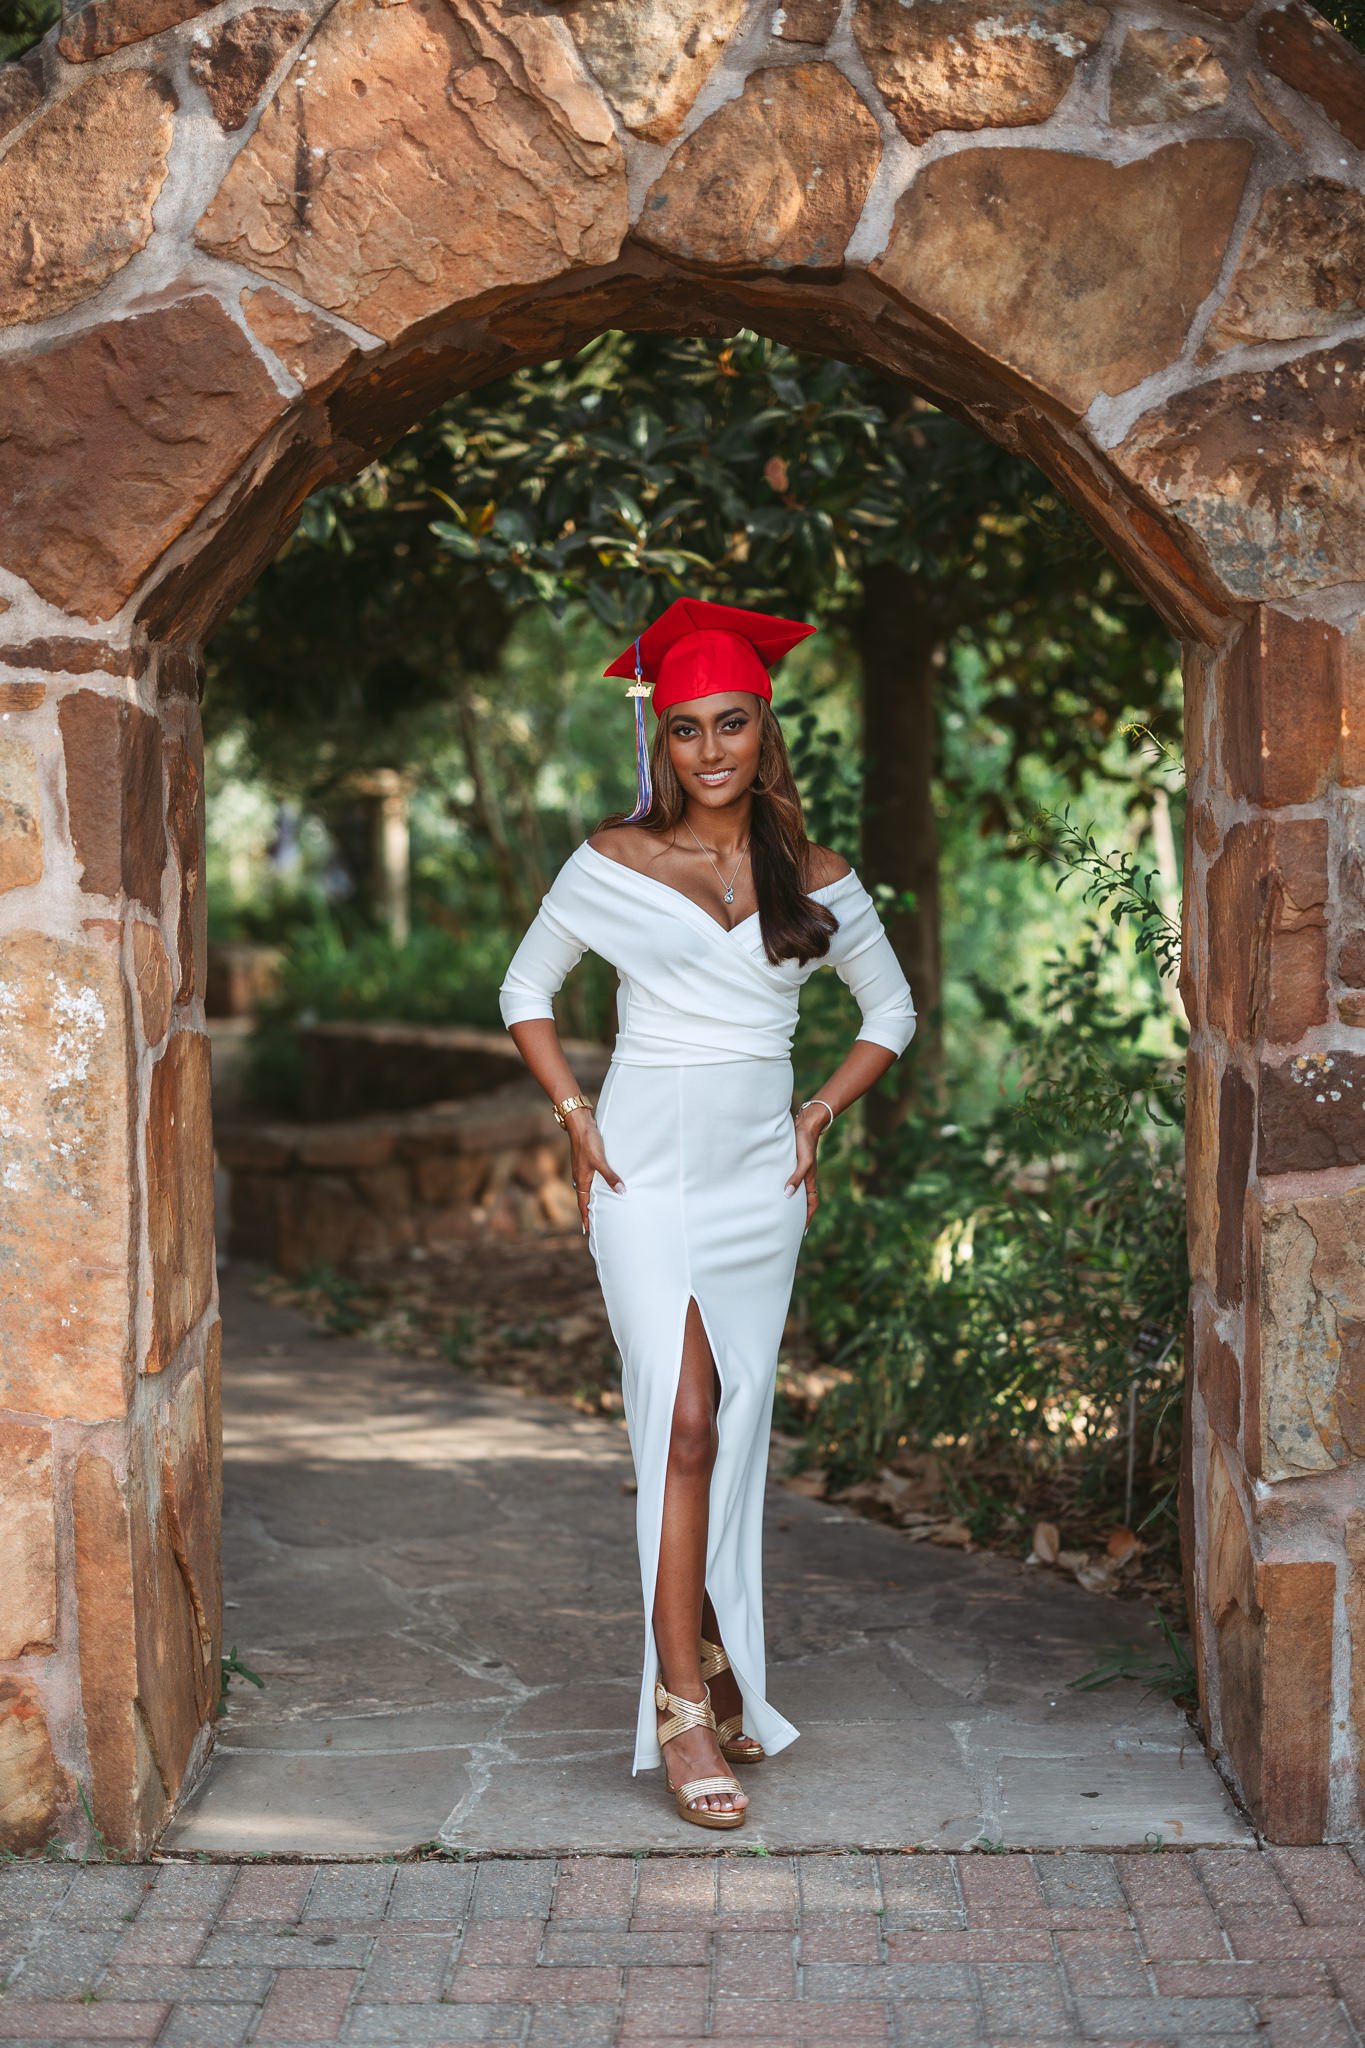 senior girl graduation hat gardens outdoors white dress